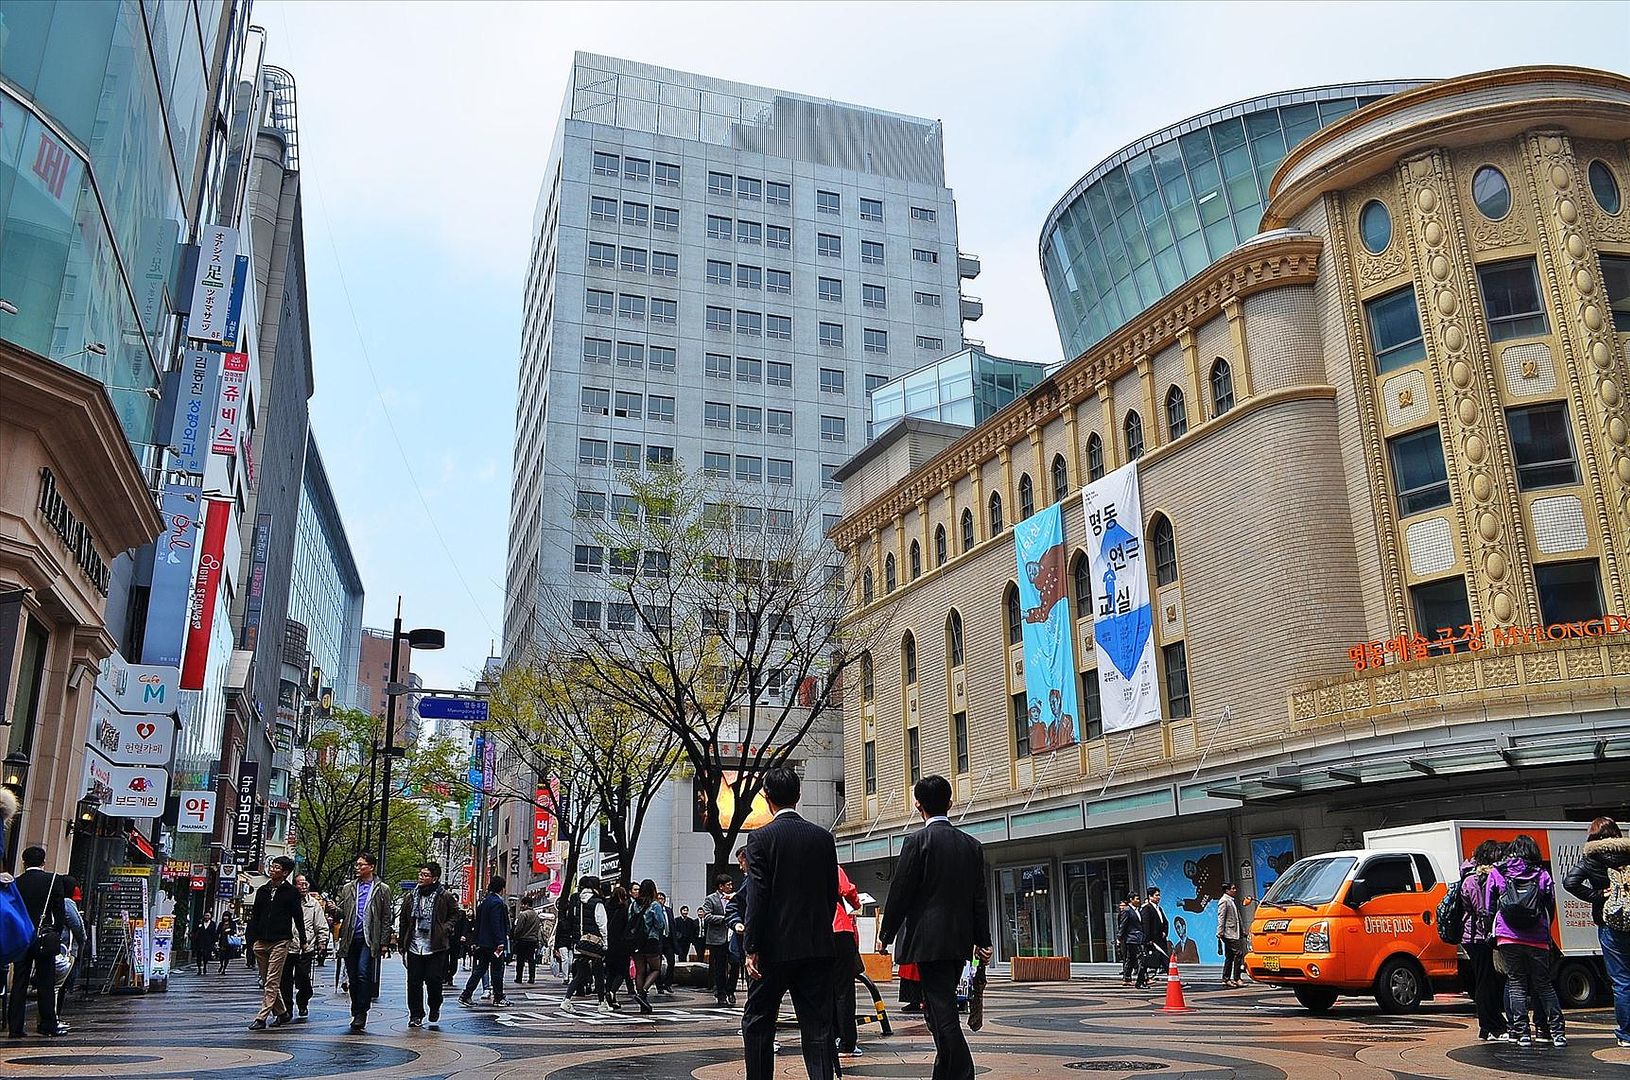 Сеул как второй по величине мегаполис мира (Южная Корея) 